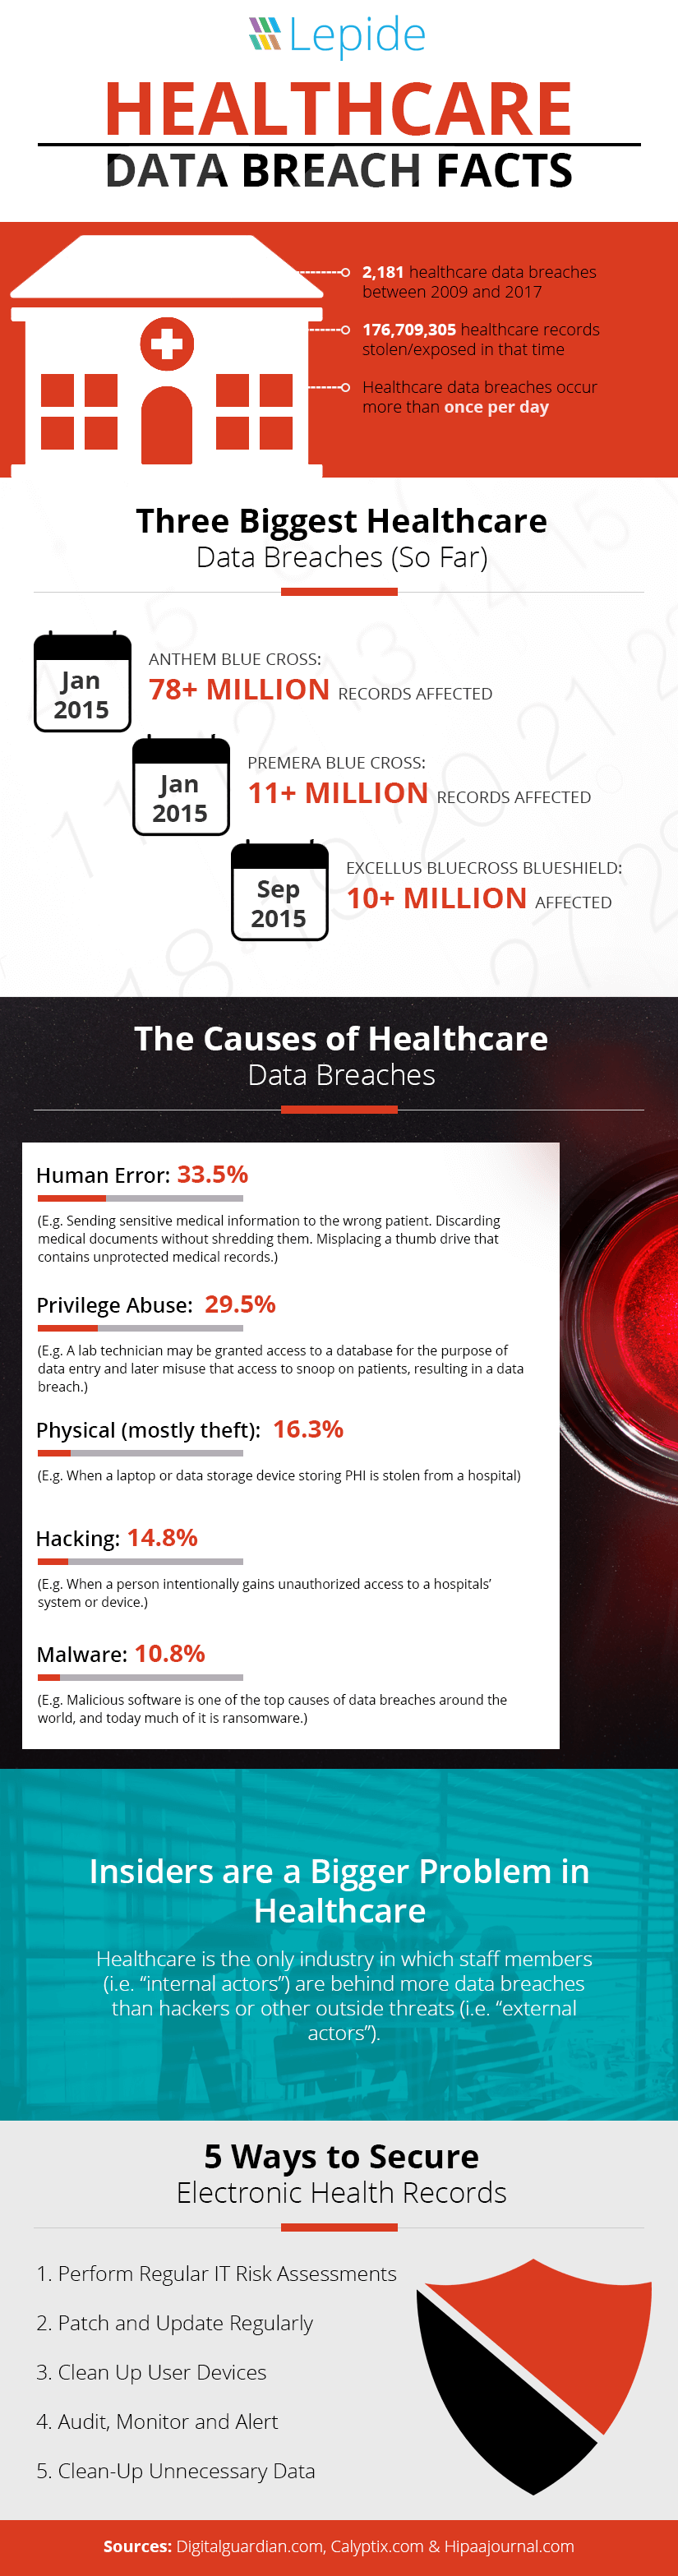 Data Breaches in Healthcare